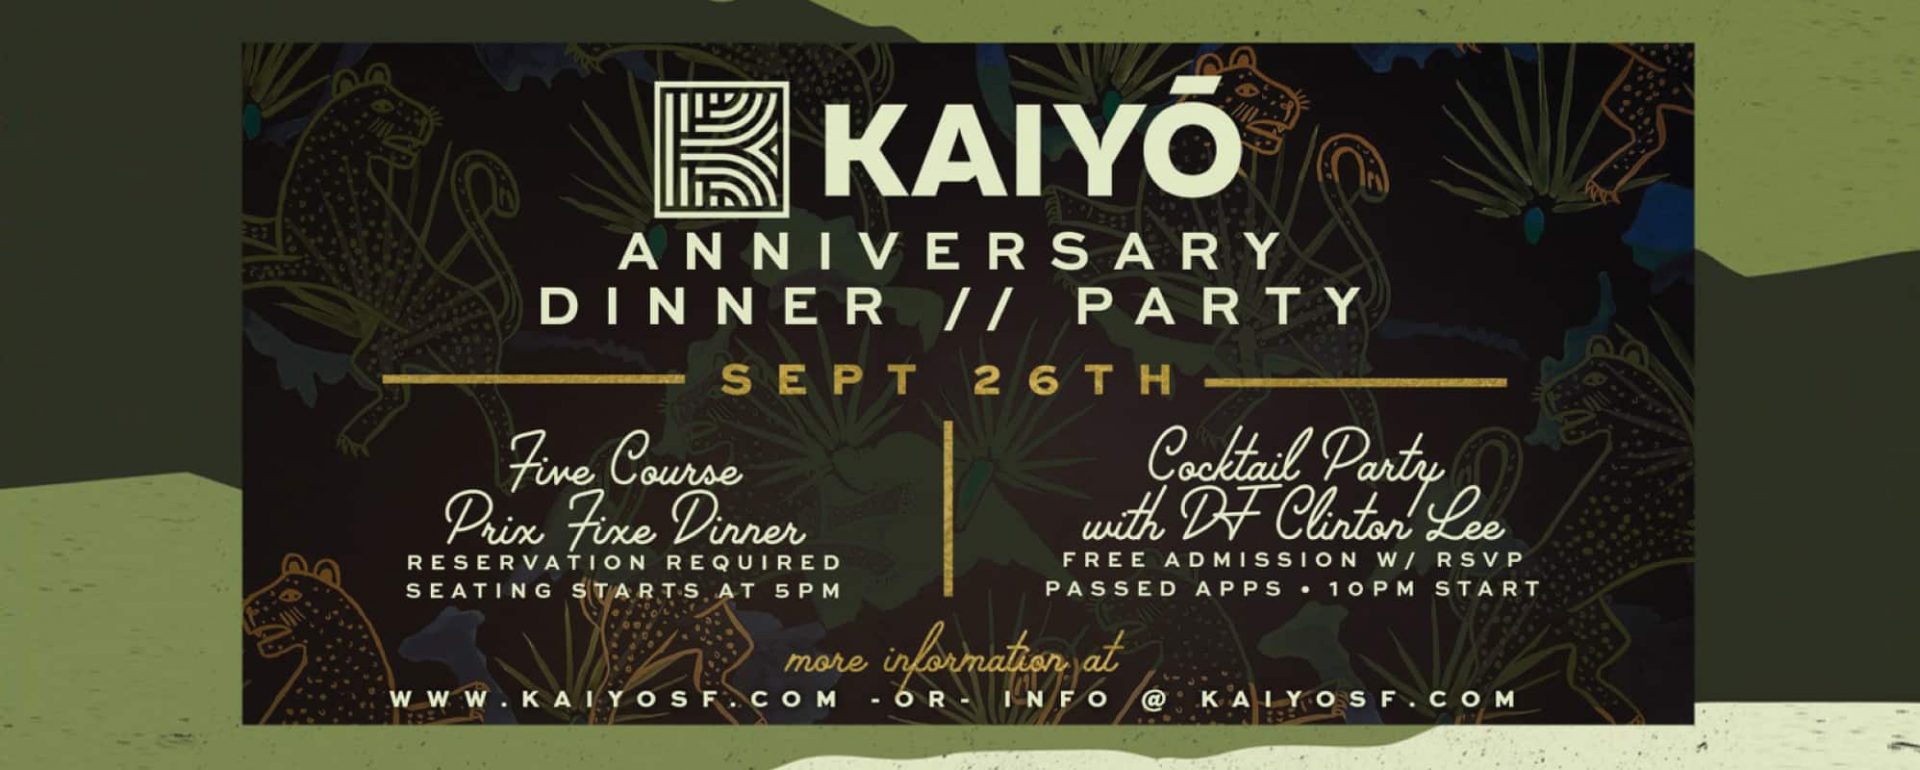 Kaiyo Anniversary Party